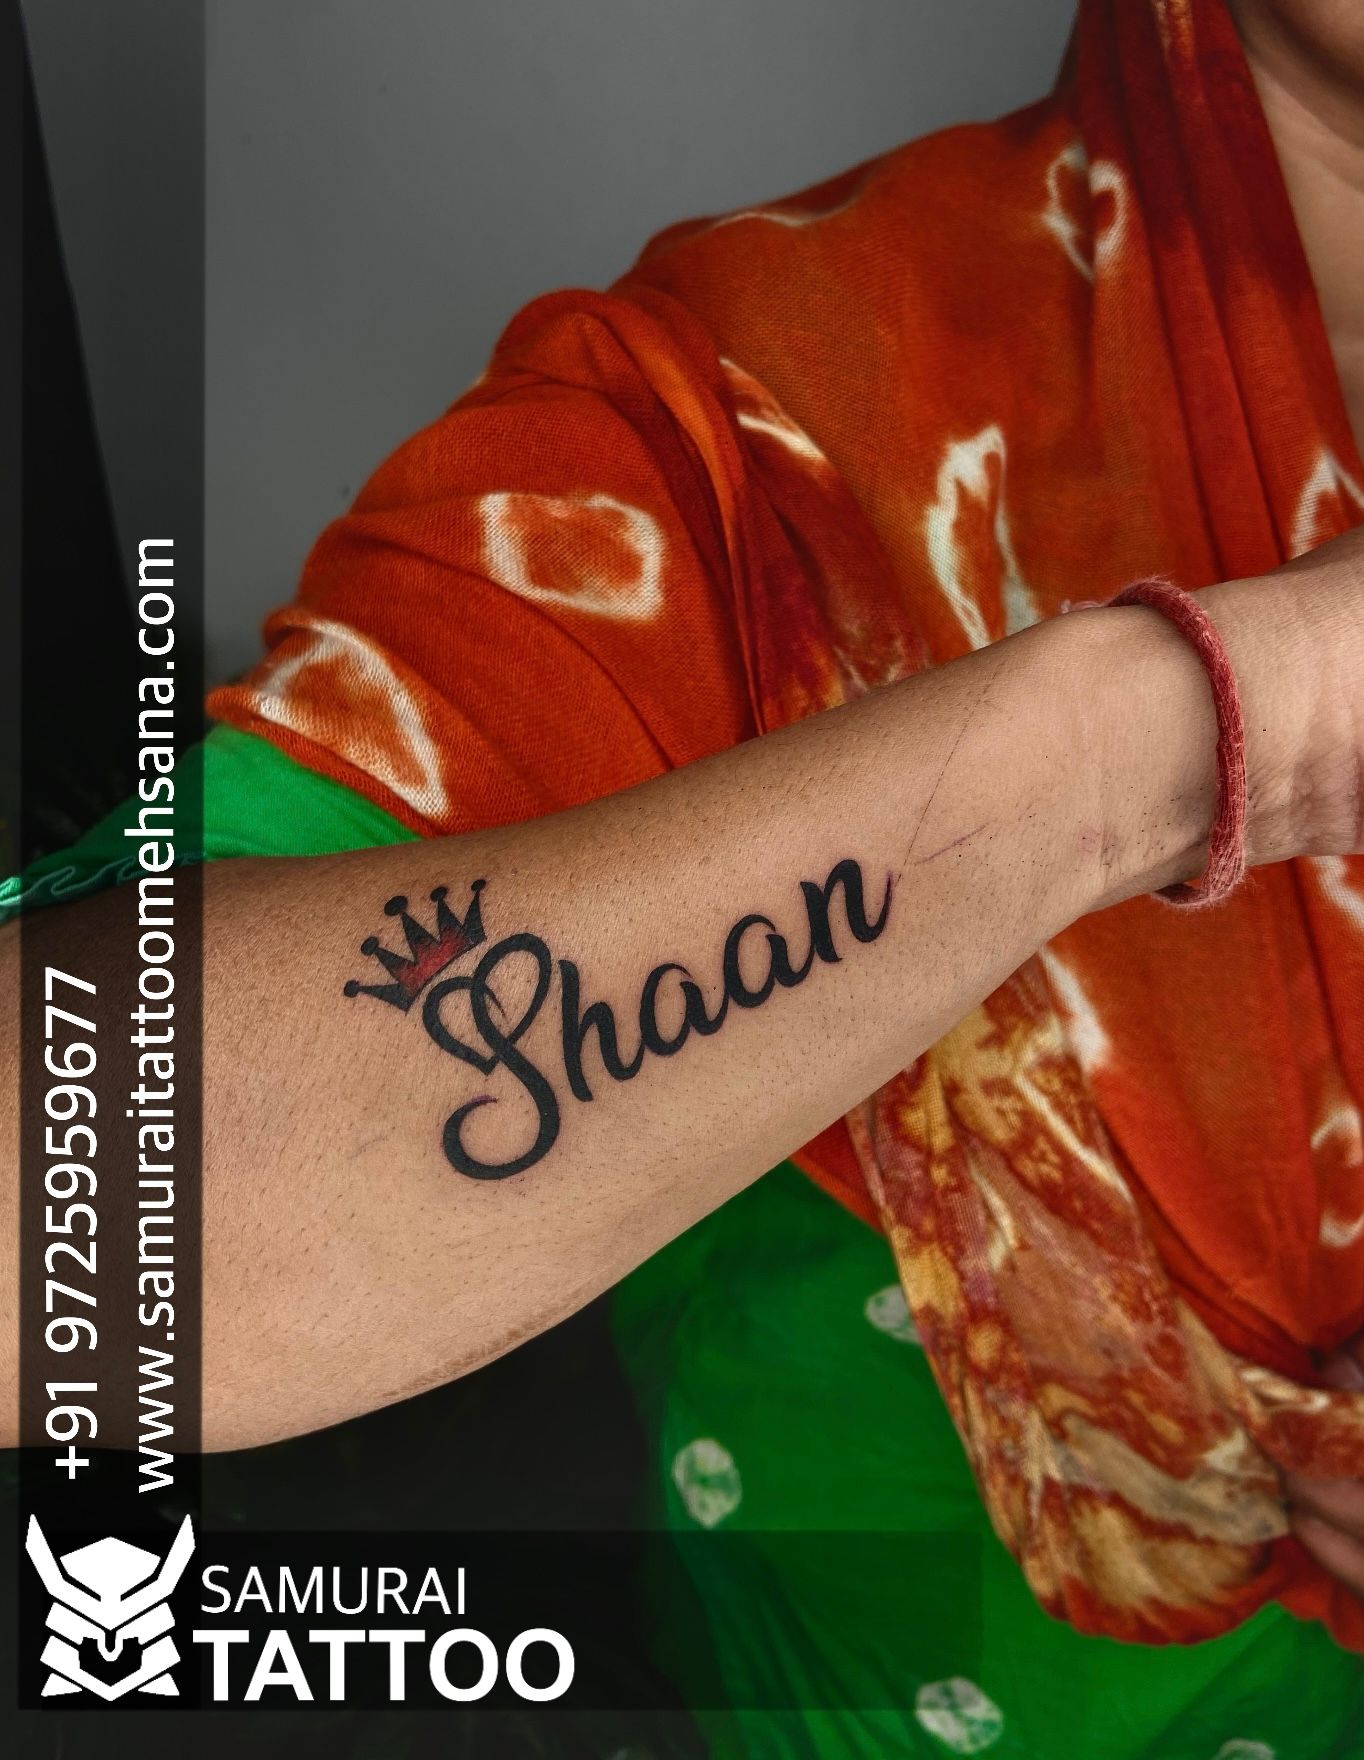 Shaun Name Tattoo Designs  Name tattoo Name tattoo designs Name tattoos